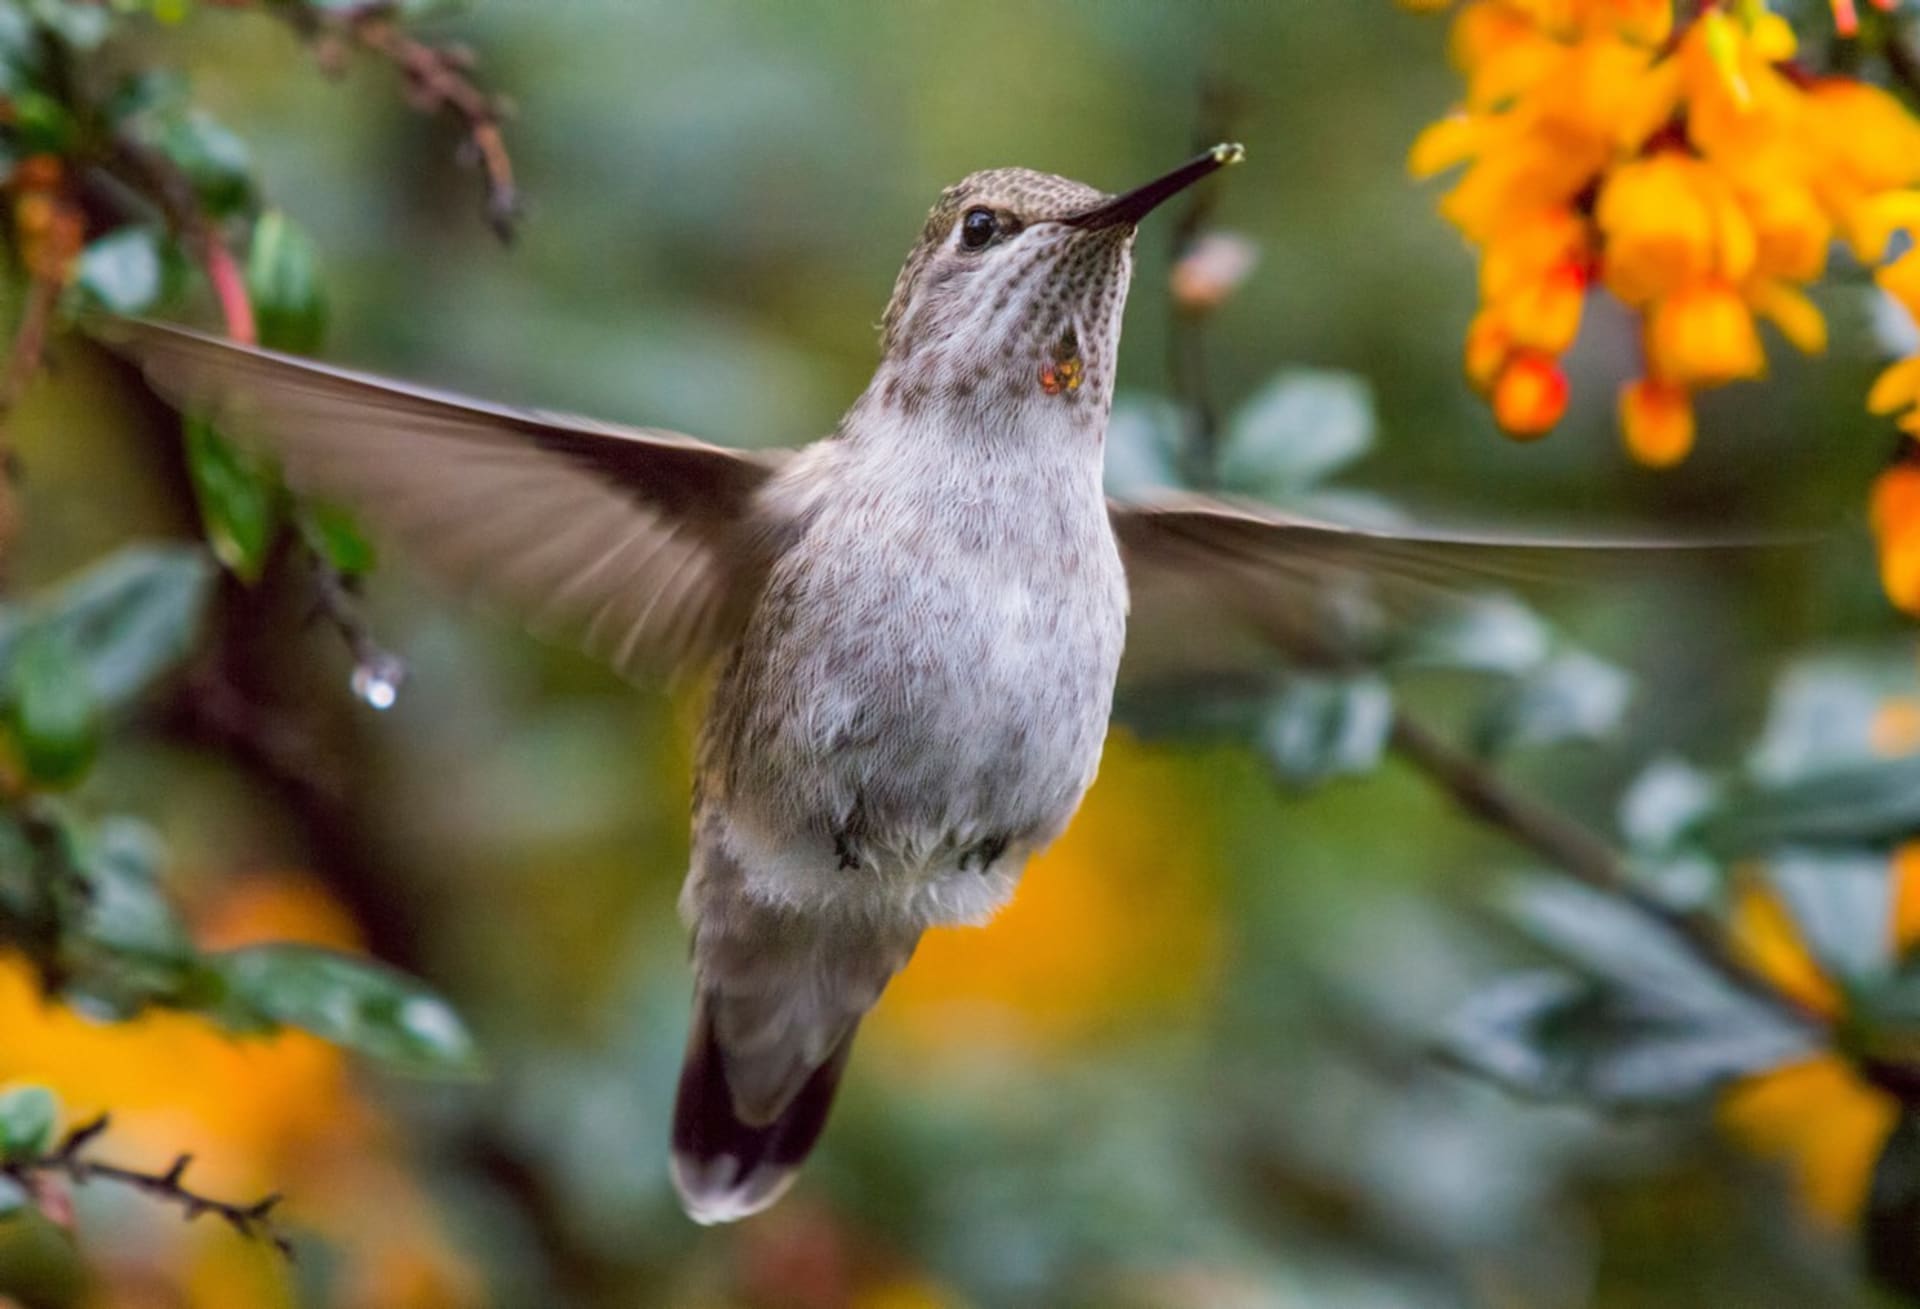 Kolibřík mávne křídly až 90x za vteřinu